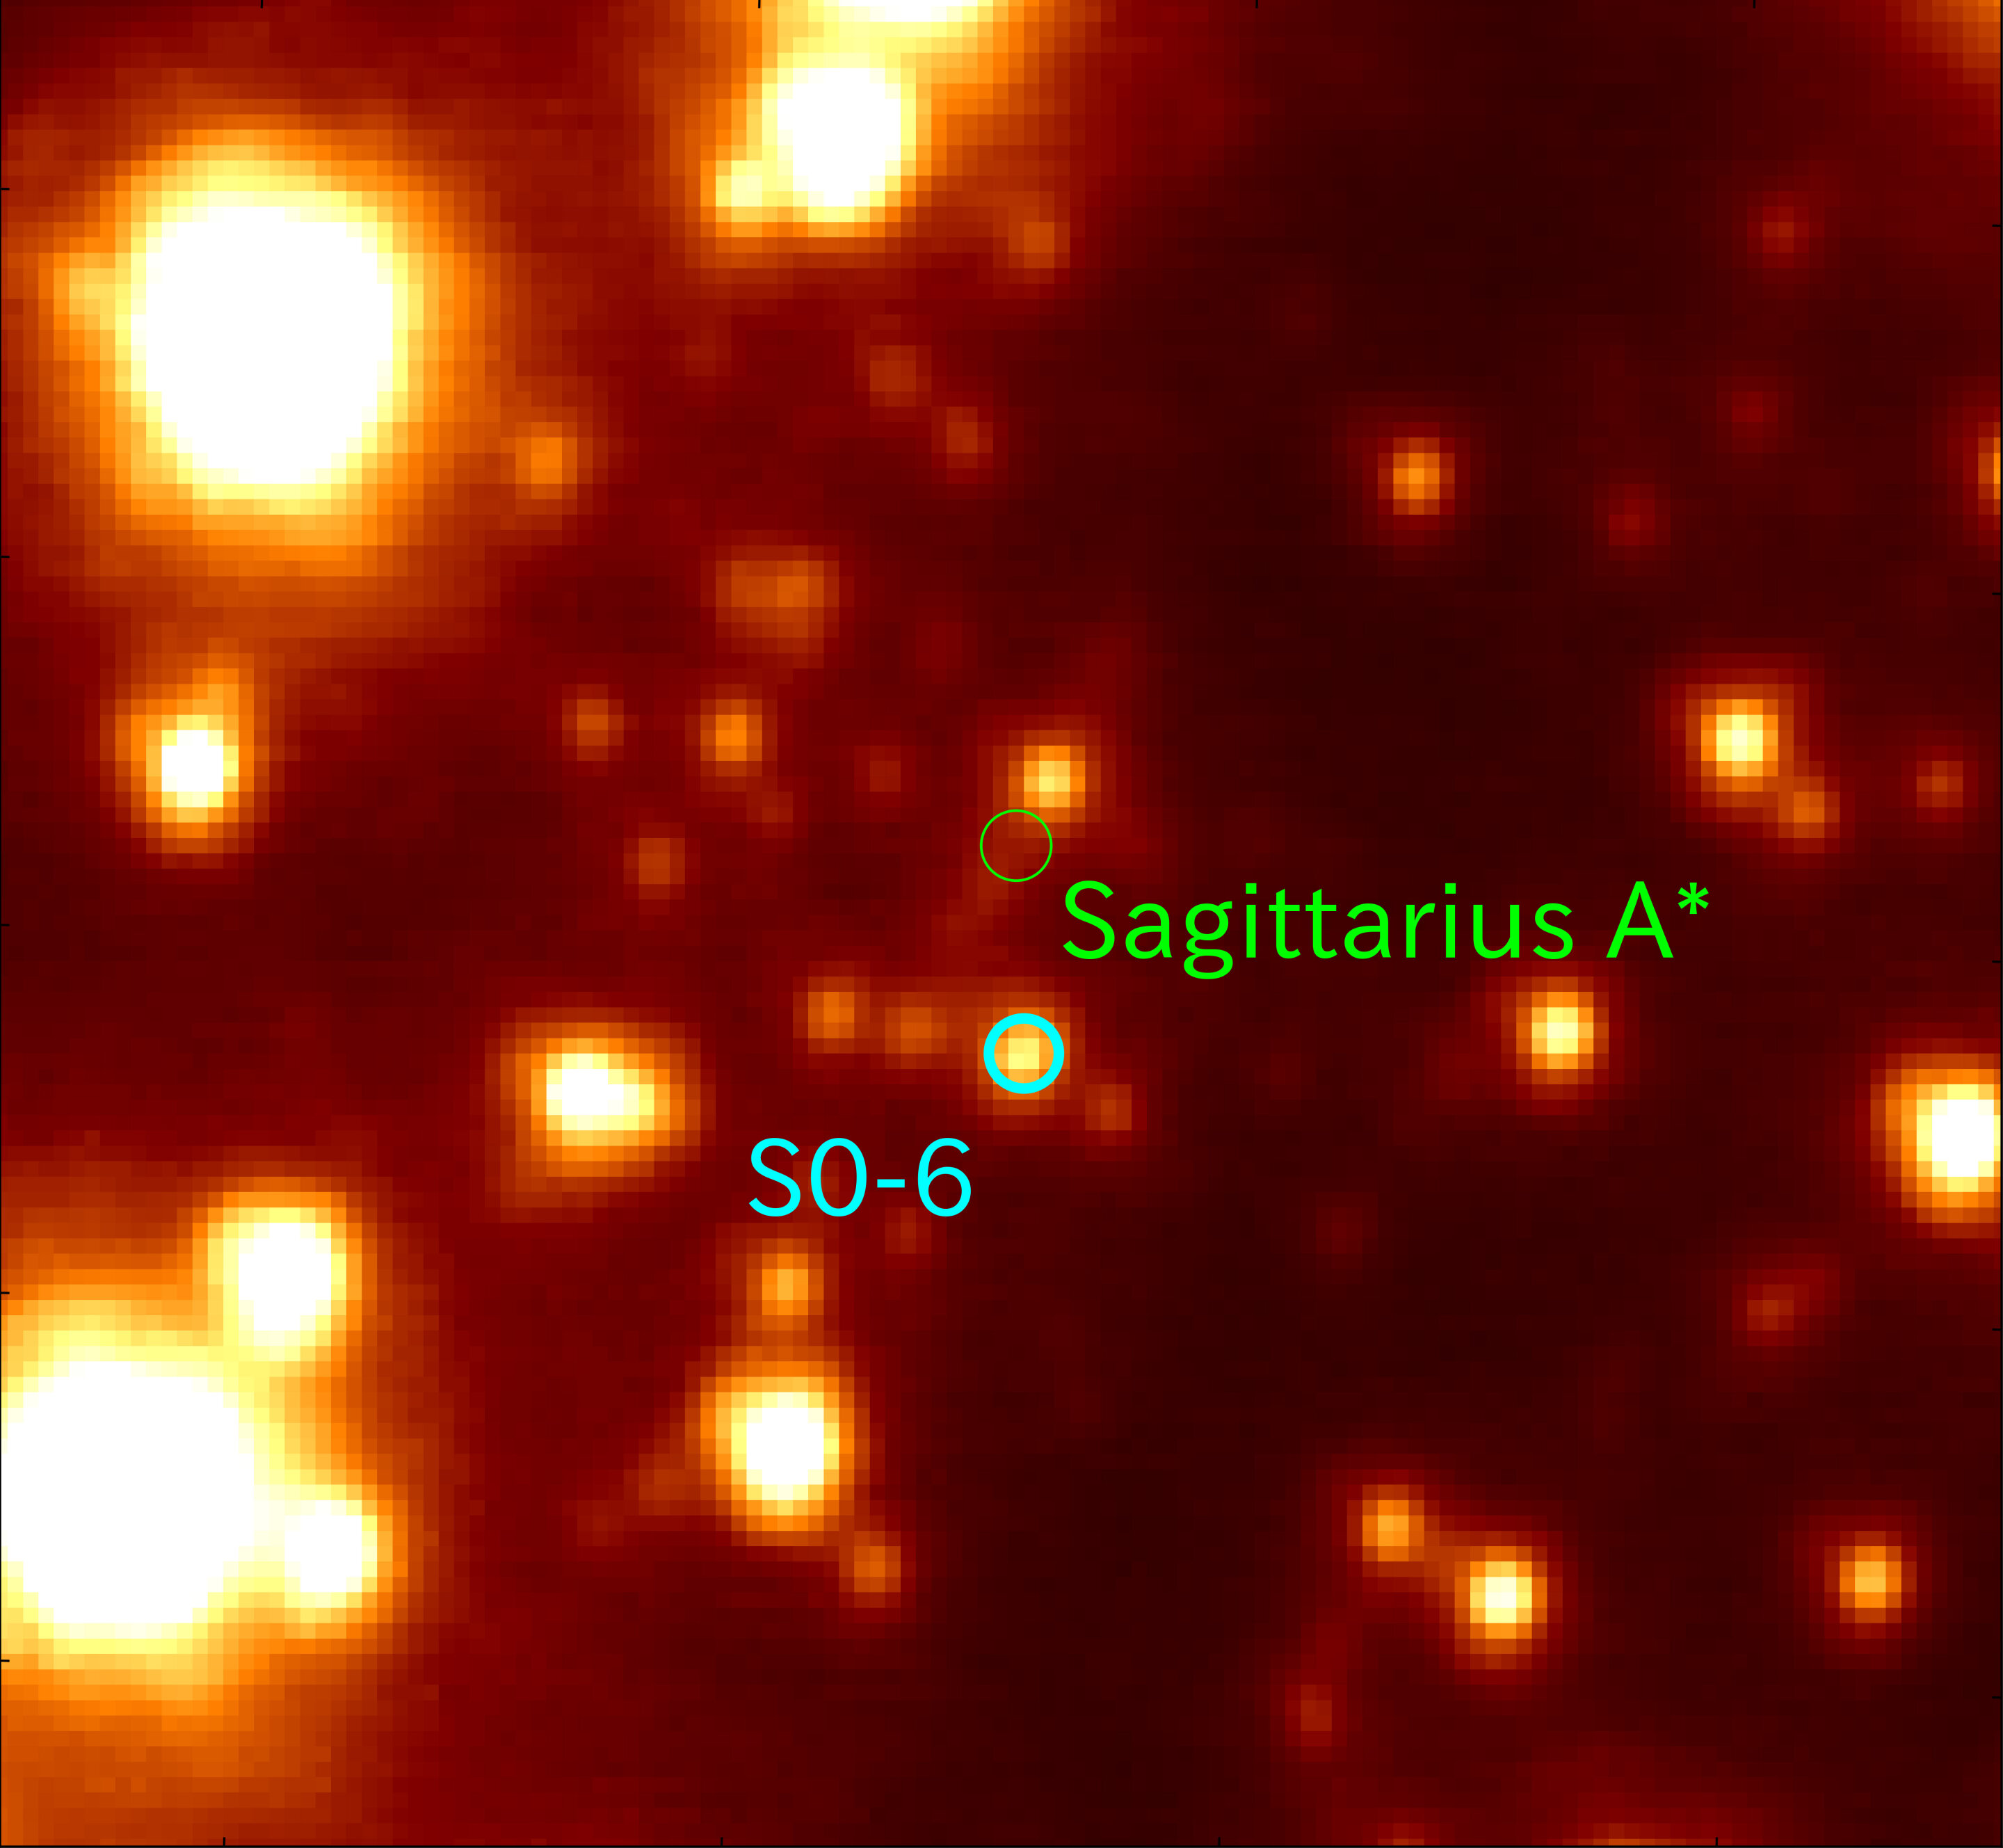  S0-6 en Sagittarius A*